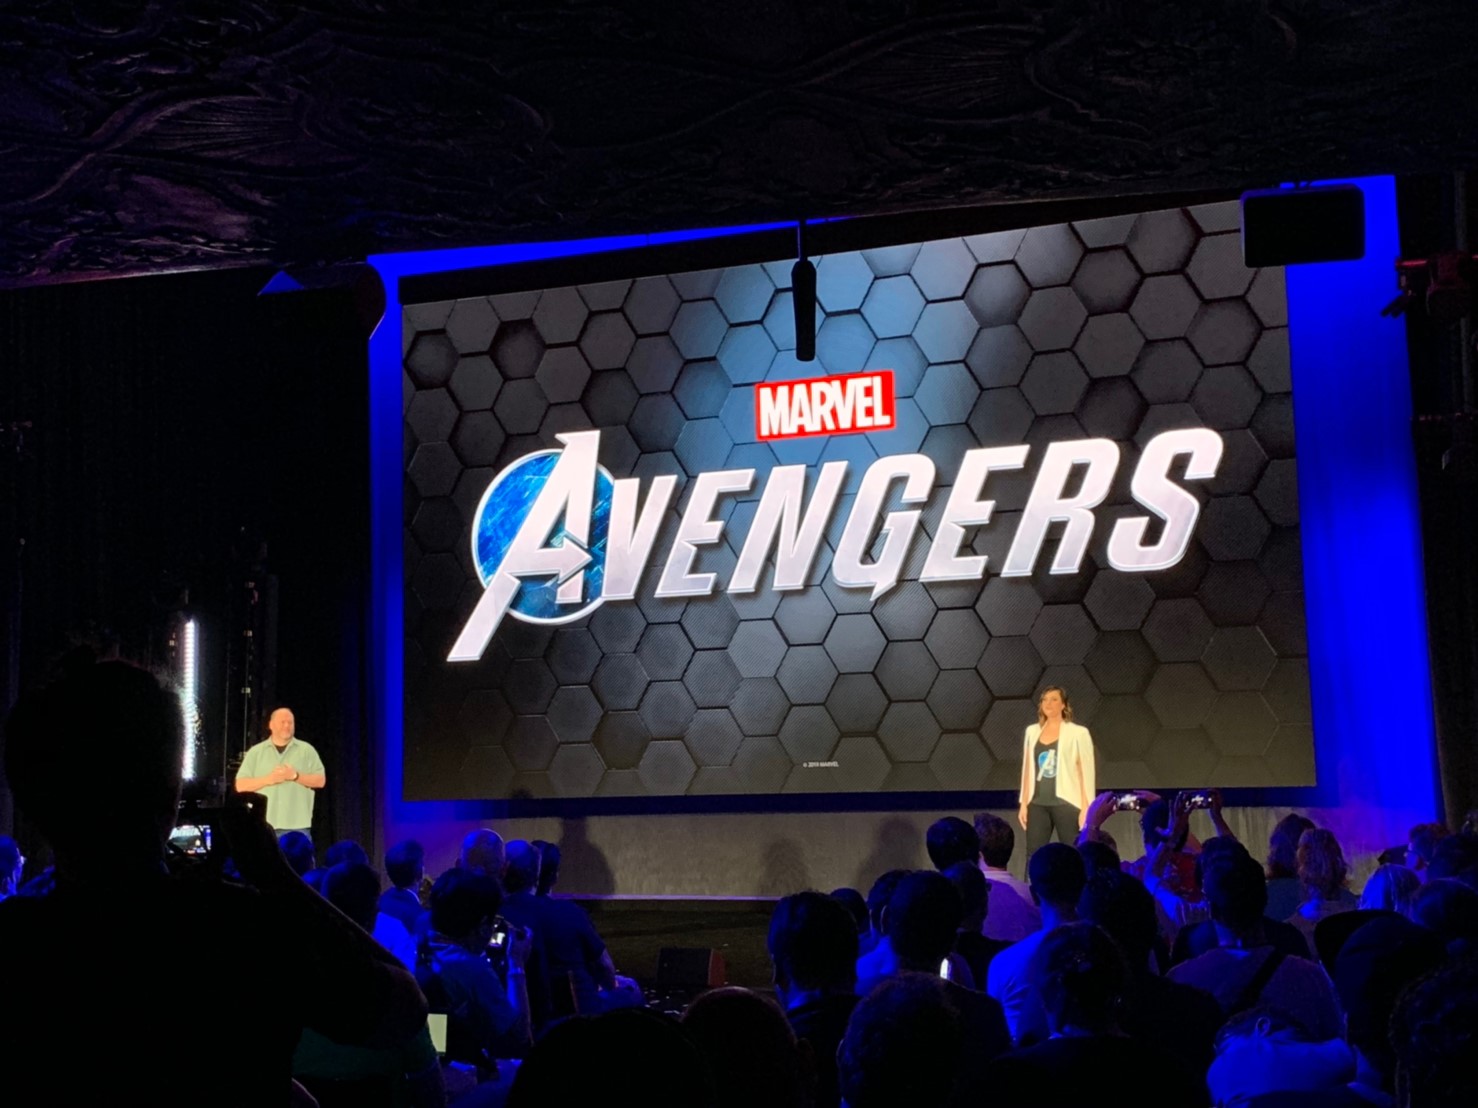 ข่าวดี! สาวก Marvel เตรียมปักหมุดรอเล่นเกม Avenger โดย Square Enix ได้ 15 พฤษภาคม 2020 นี้